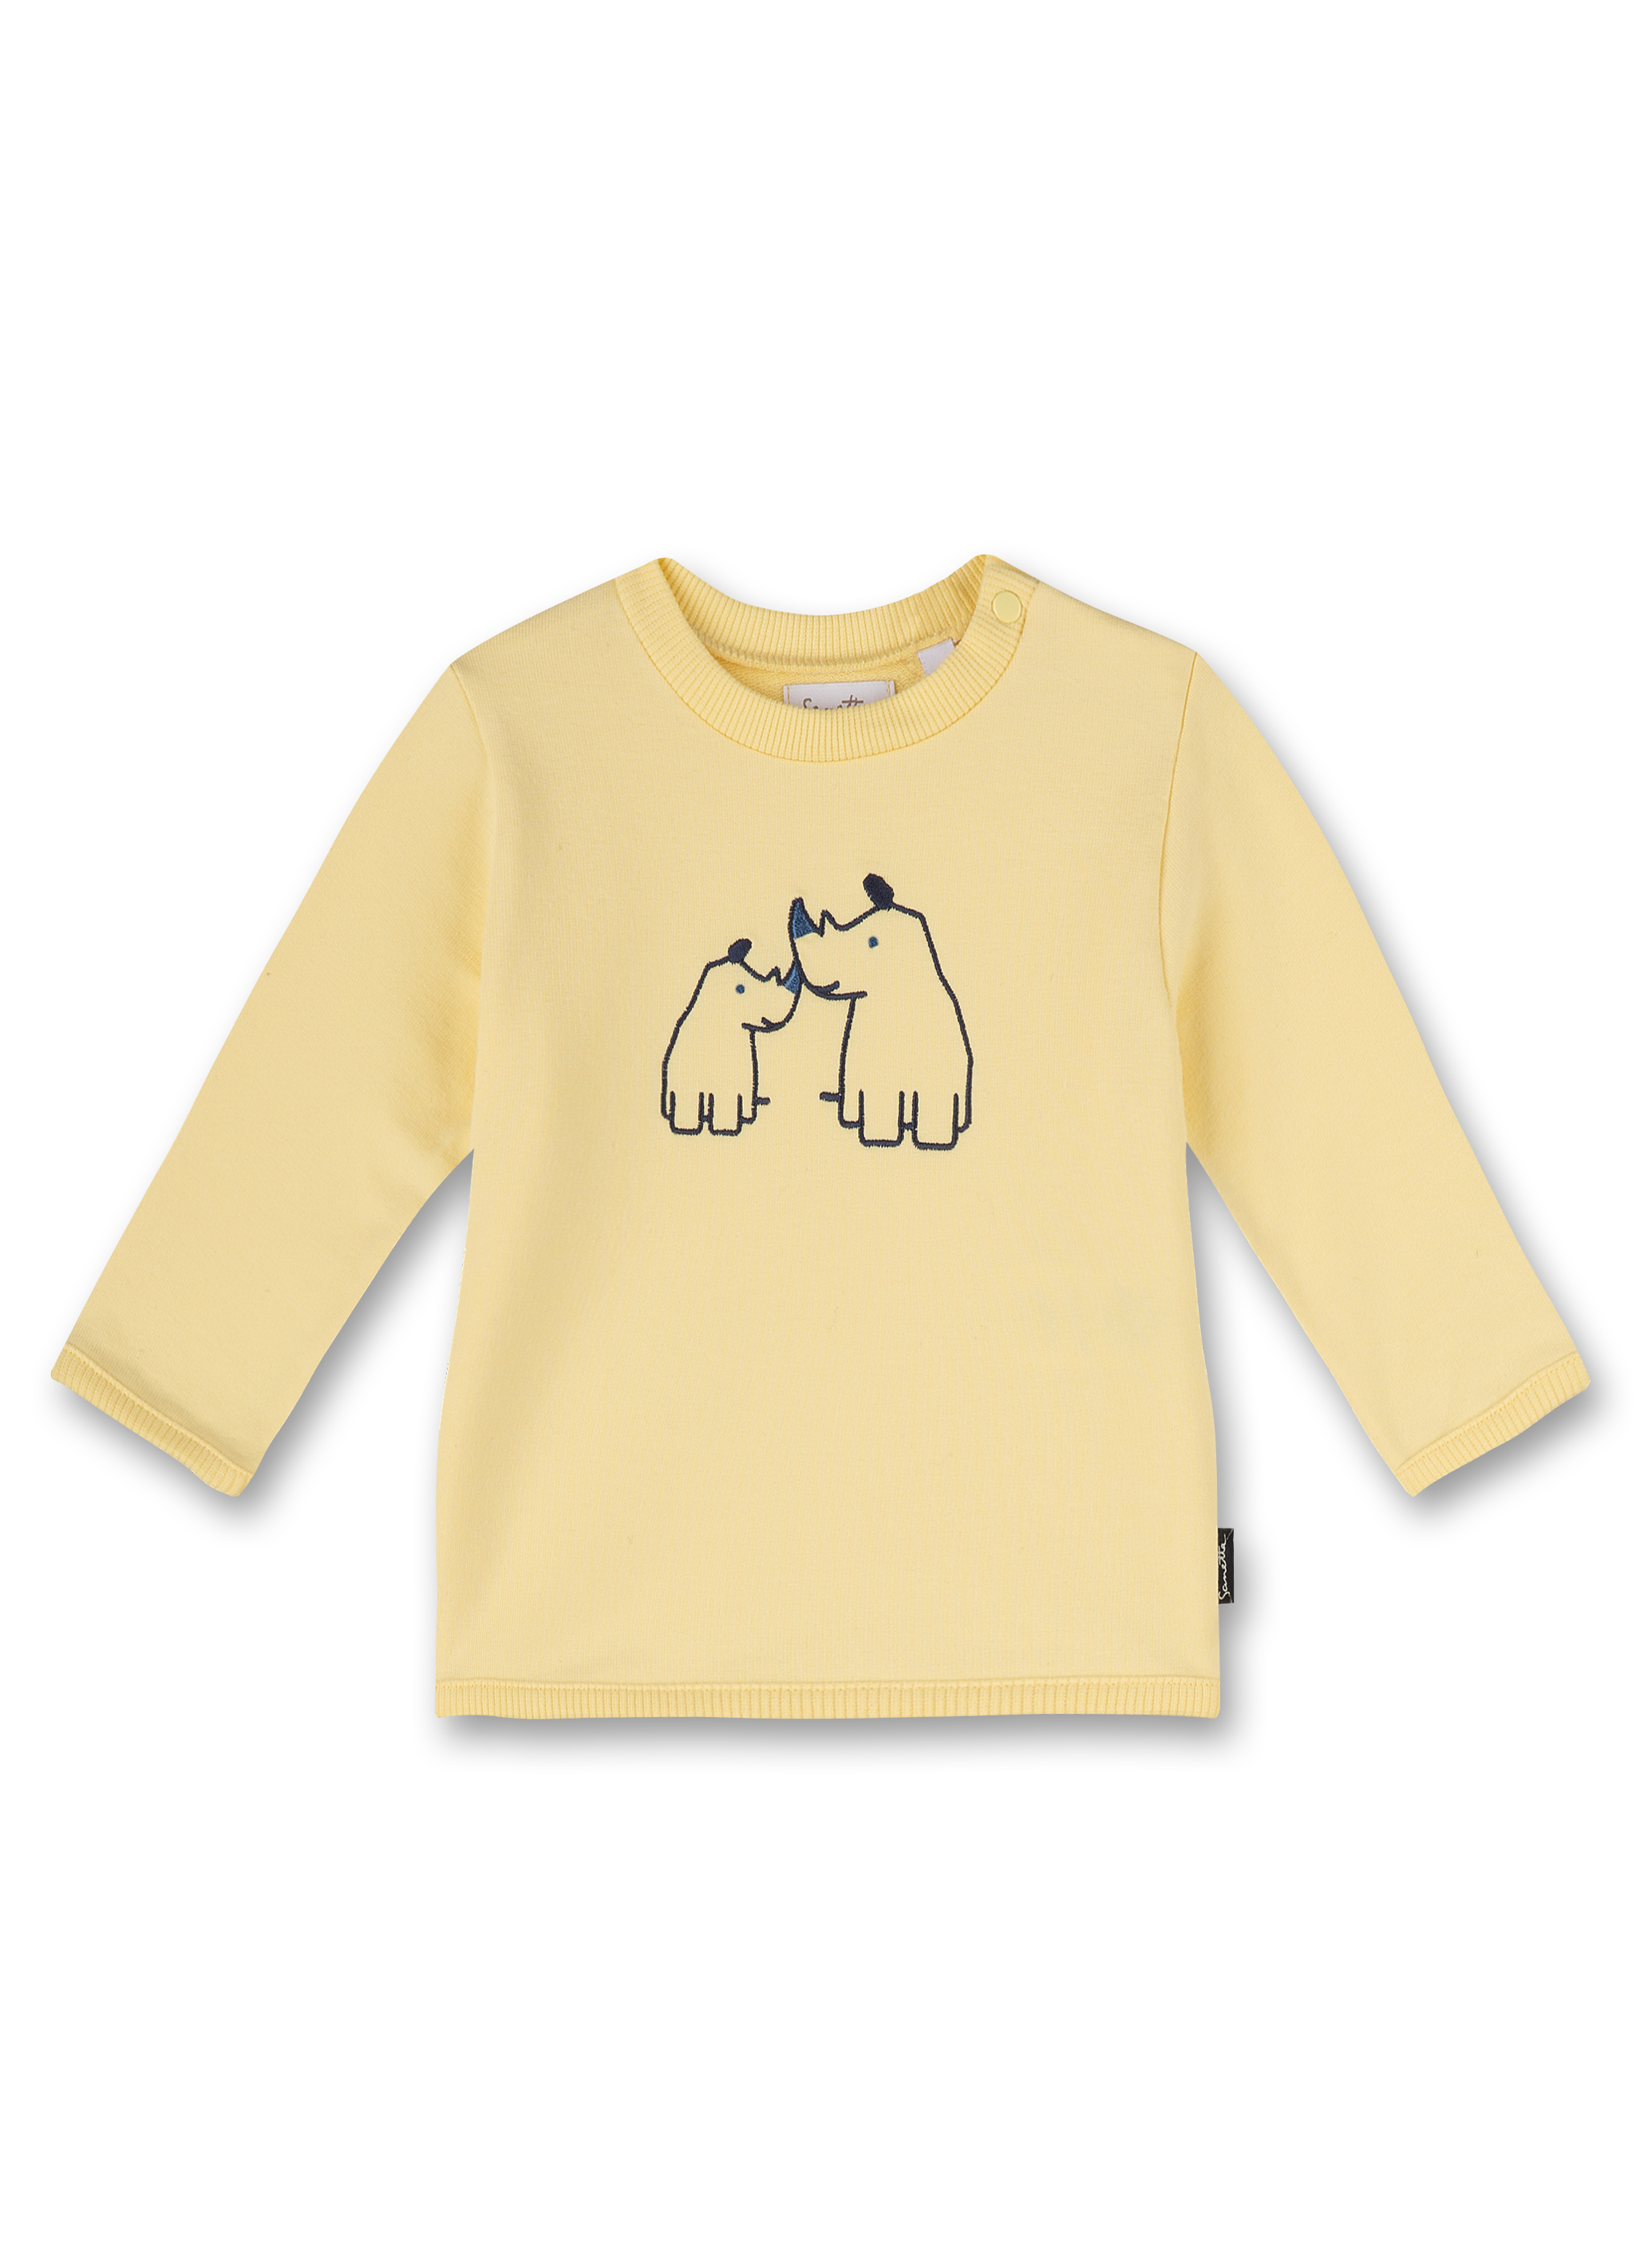 Jungen-Sweatshirt Gelb